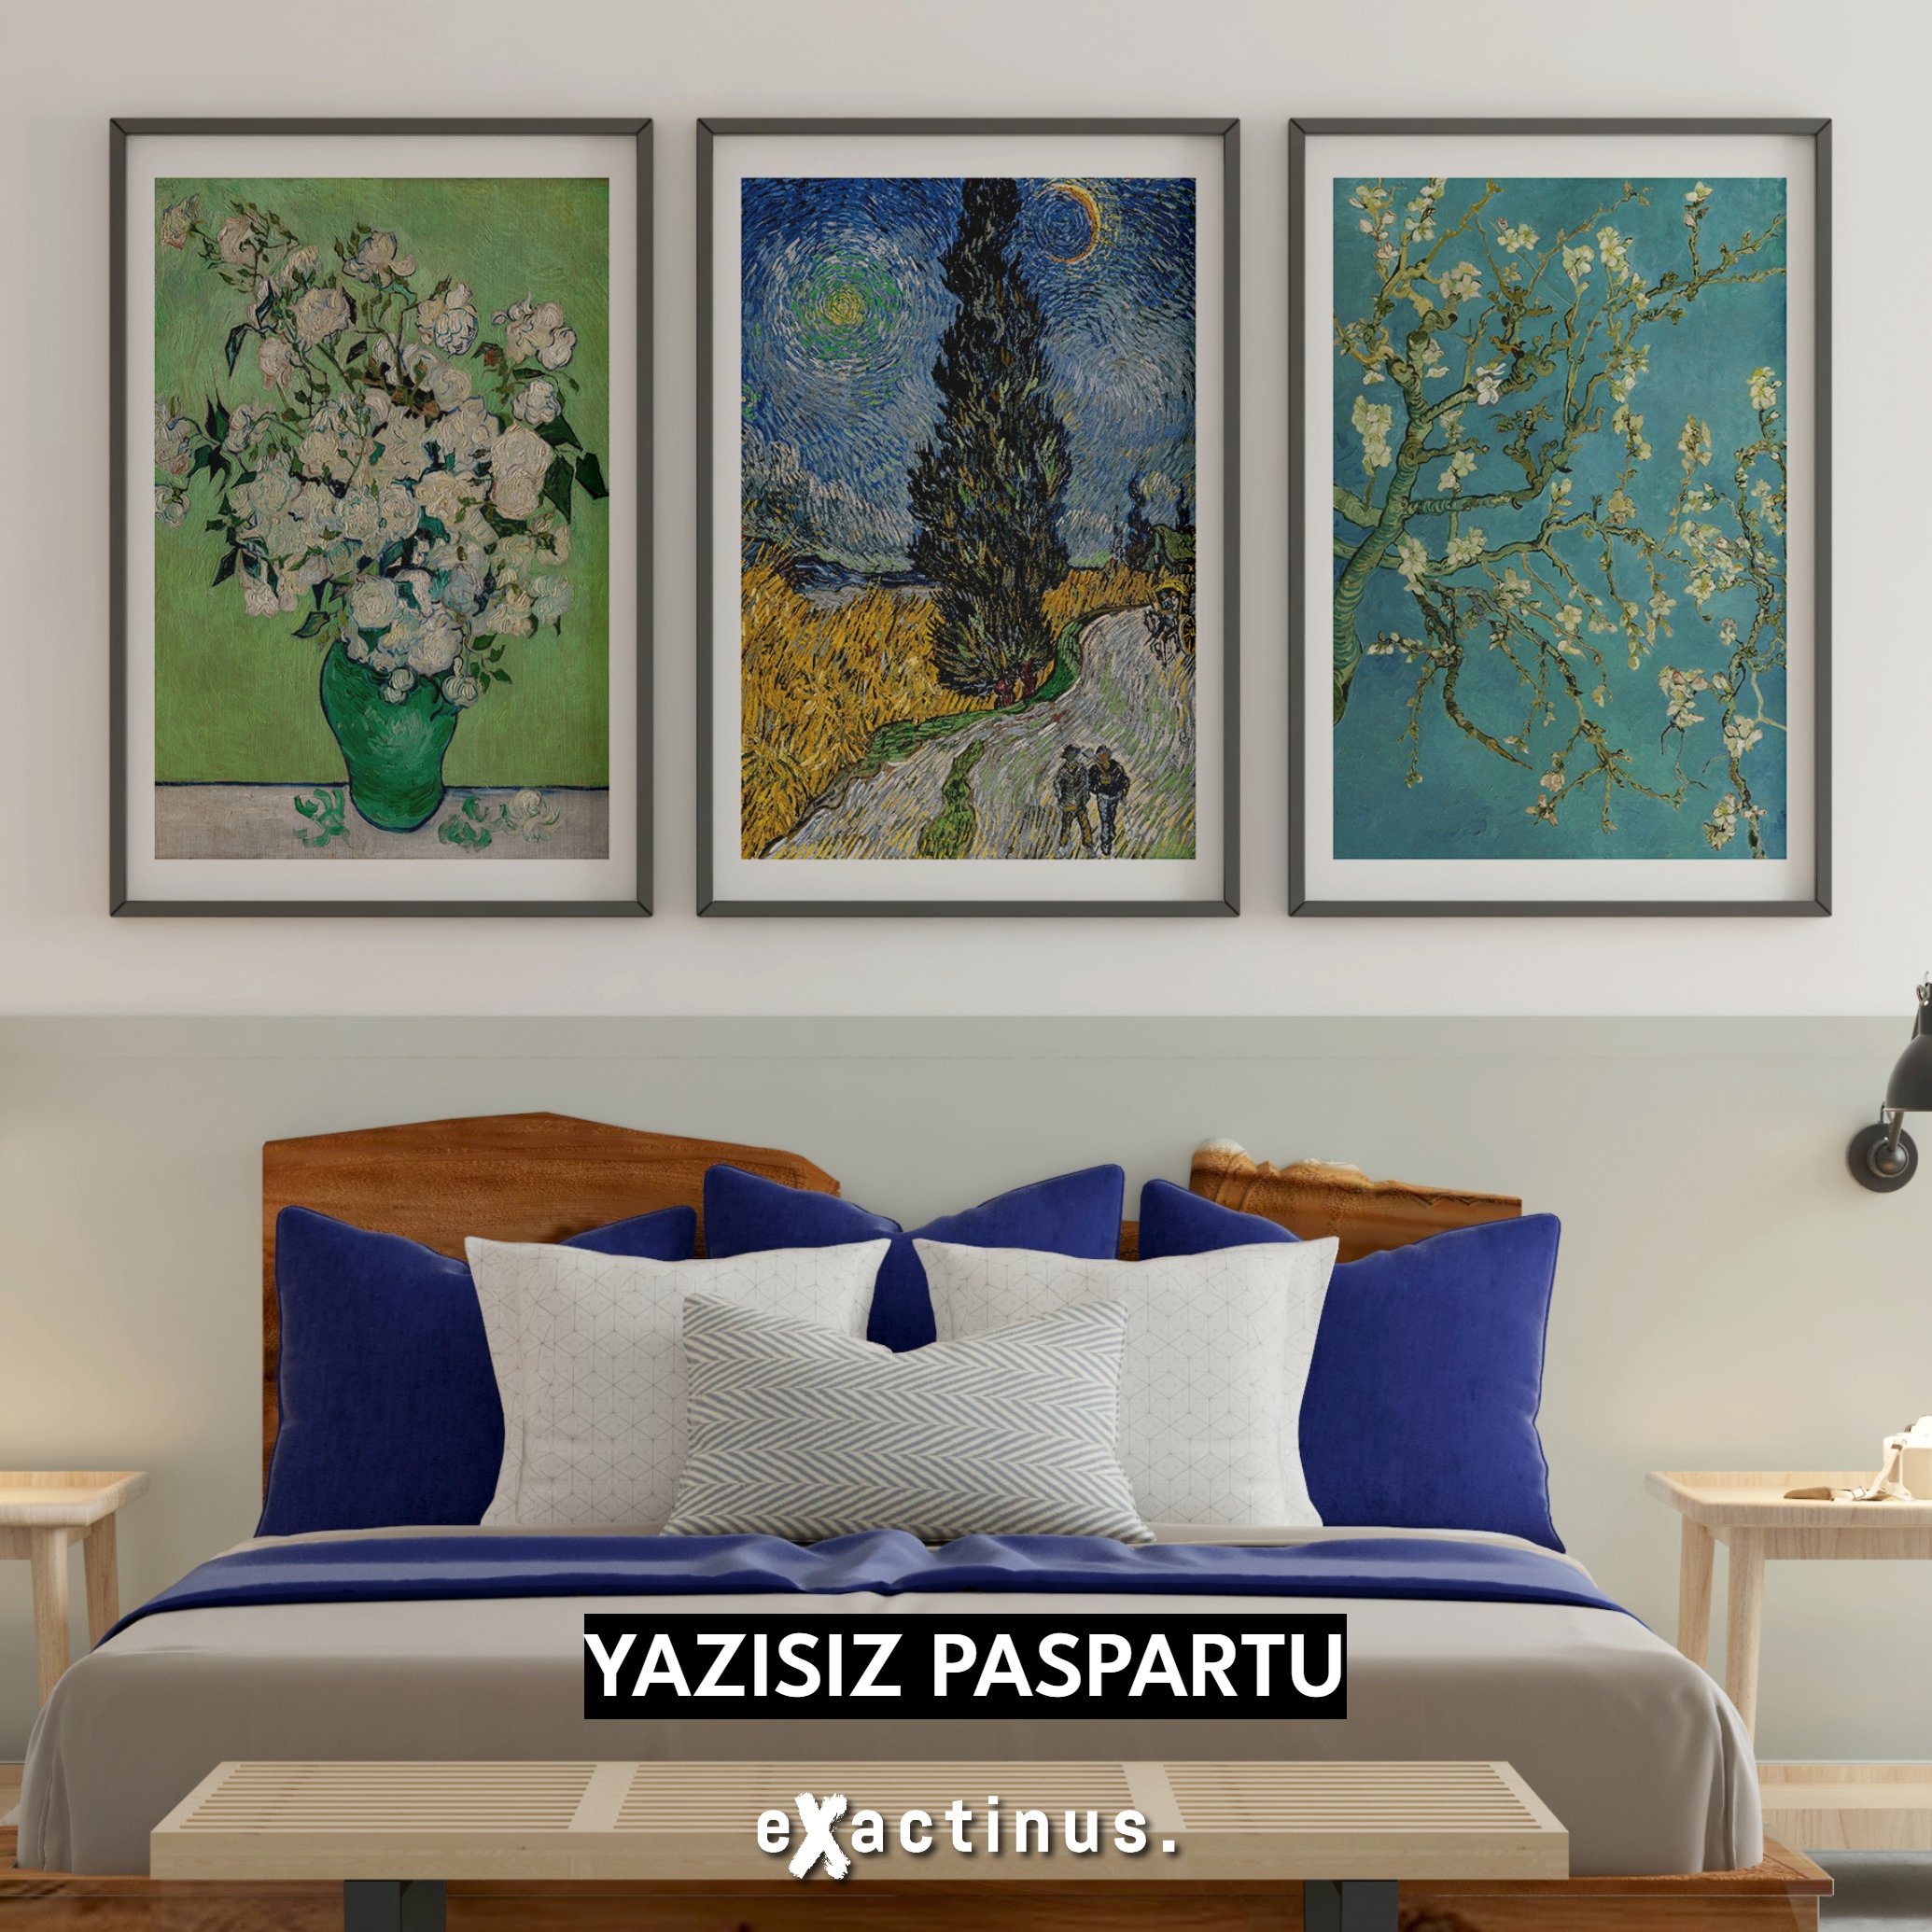 Vincent van Gogh Üç Parçalı Poster Tablo Seti (Vazoda Güller, Selvili ve Yıldızlı Yol, Çiçek Açan Badem Ağacı)